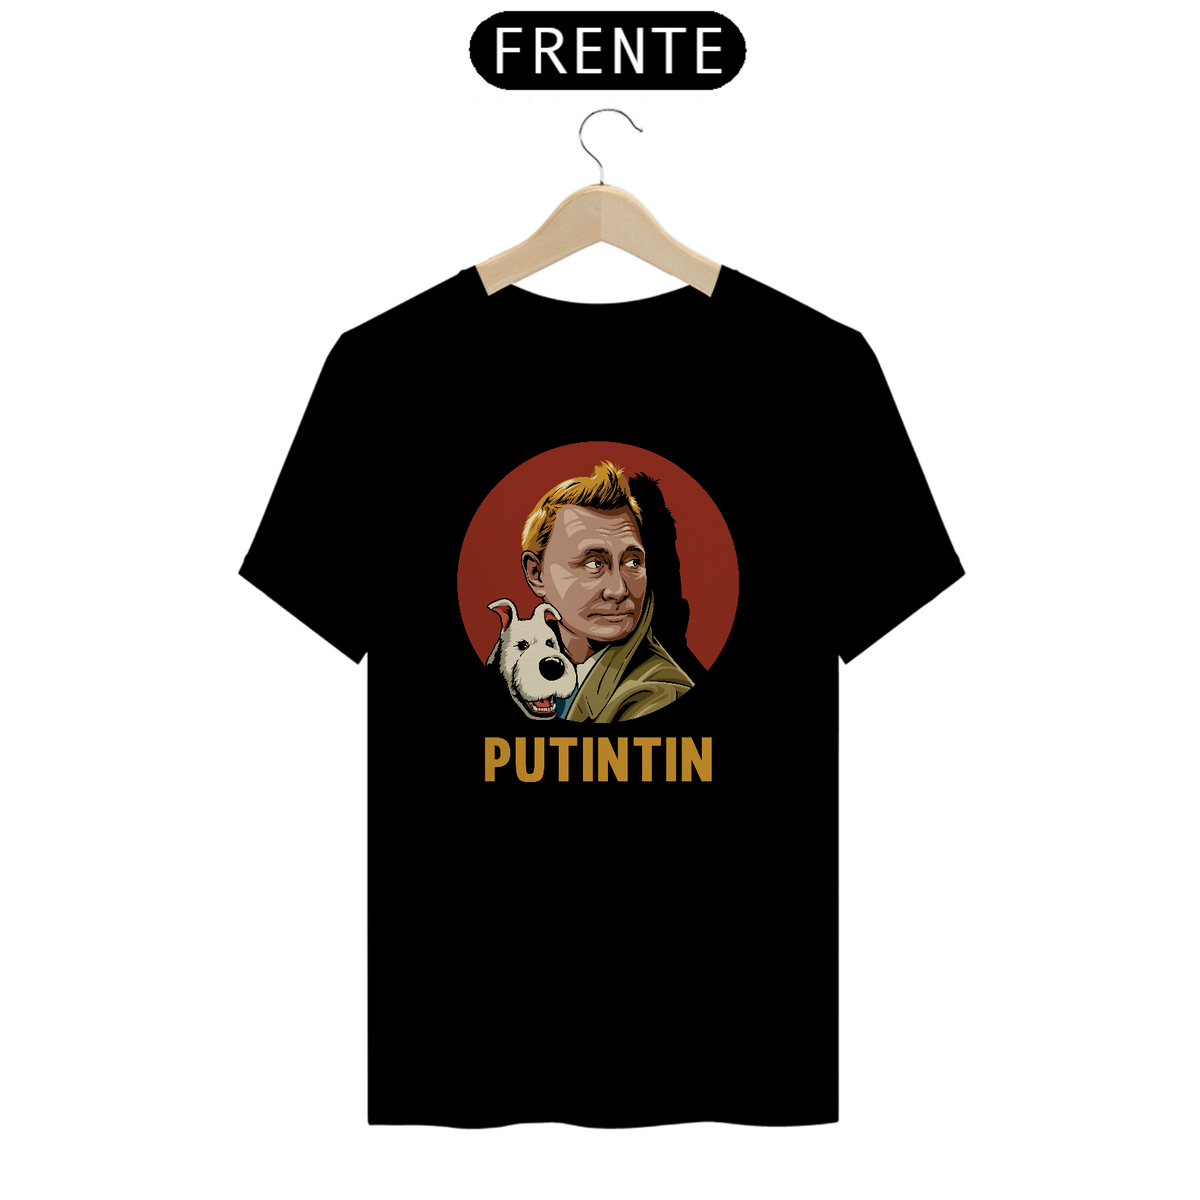 Nome do produto: Putintin